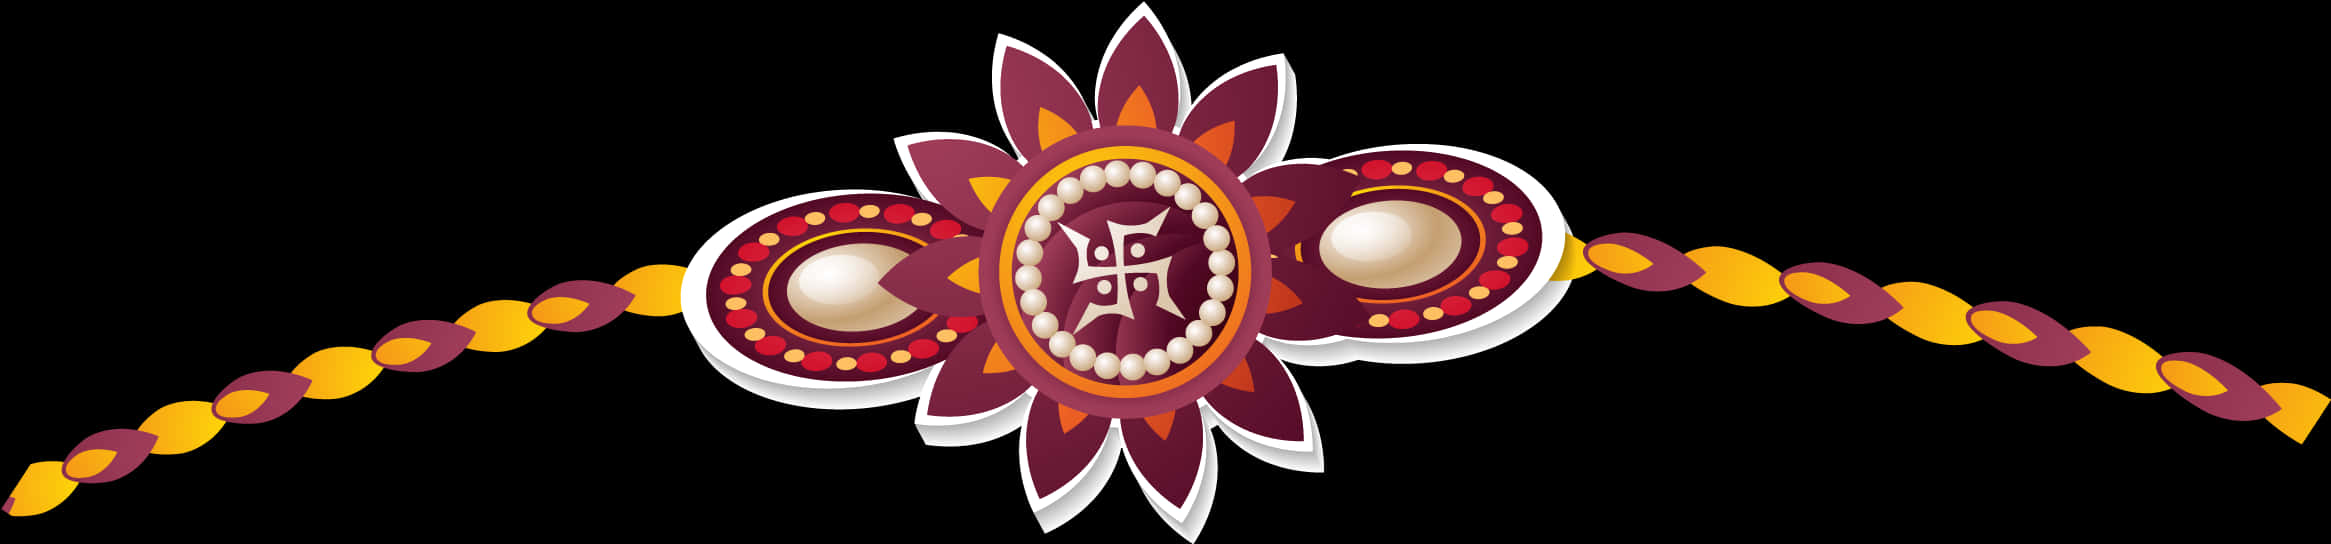 Traditional Rakhi Design PNG